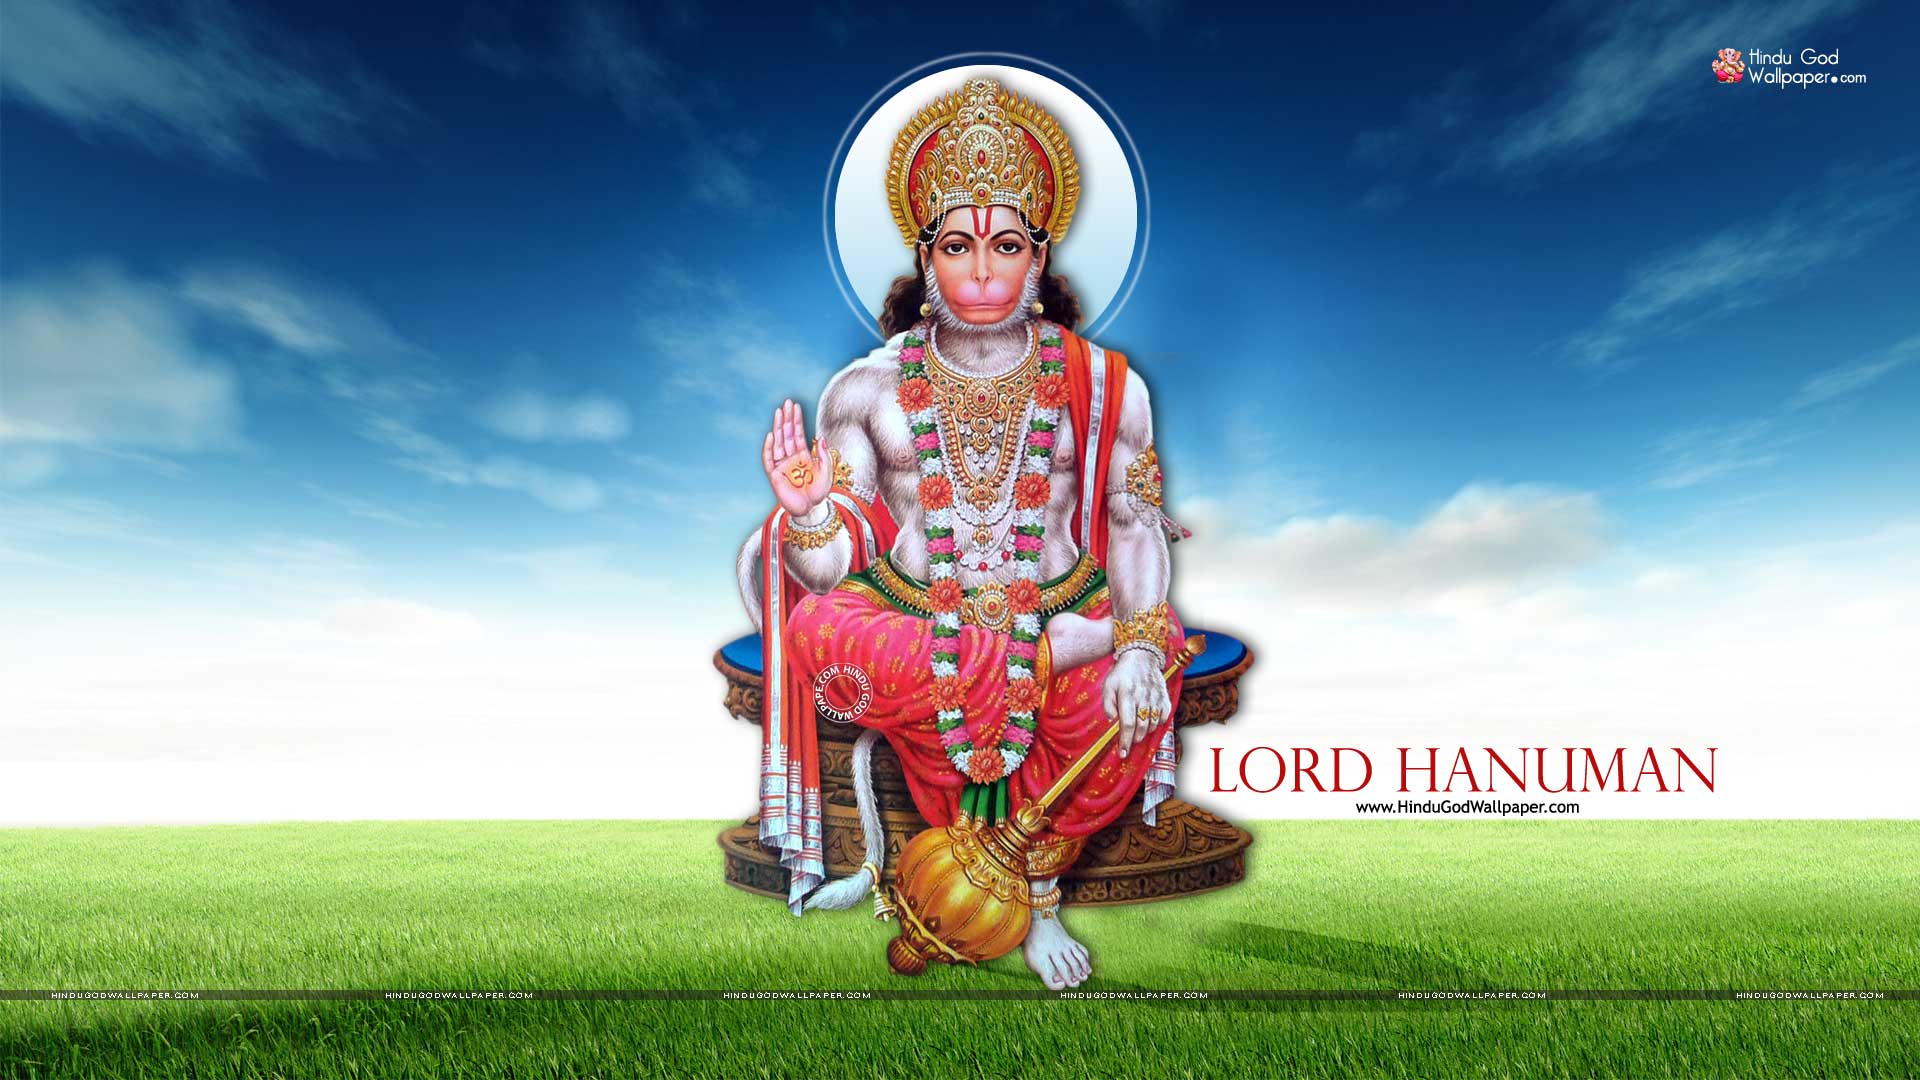 1080p Lord Hanuman HD Wallpaper 1920x1080 Full Size Download